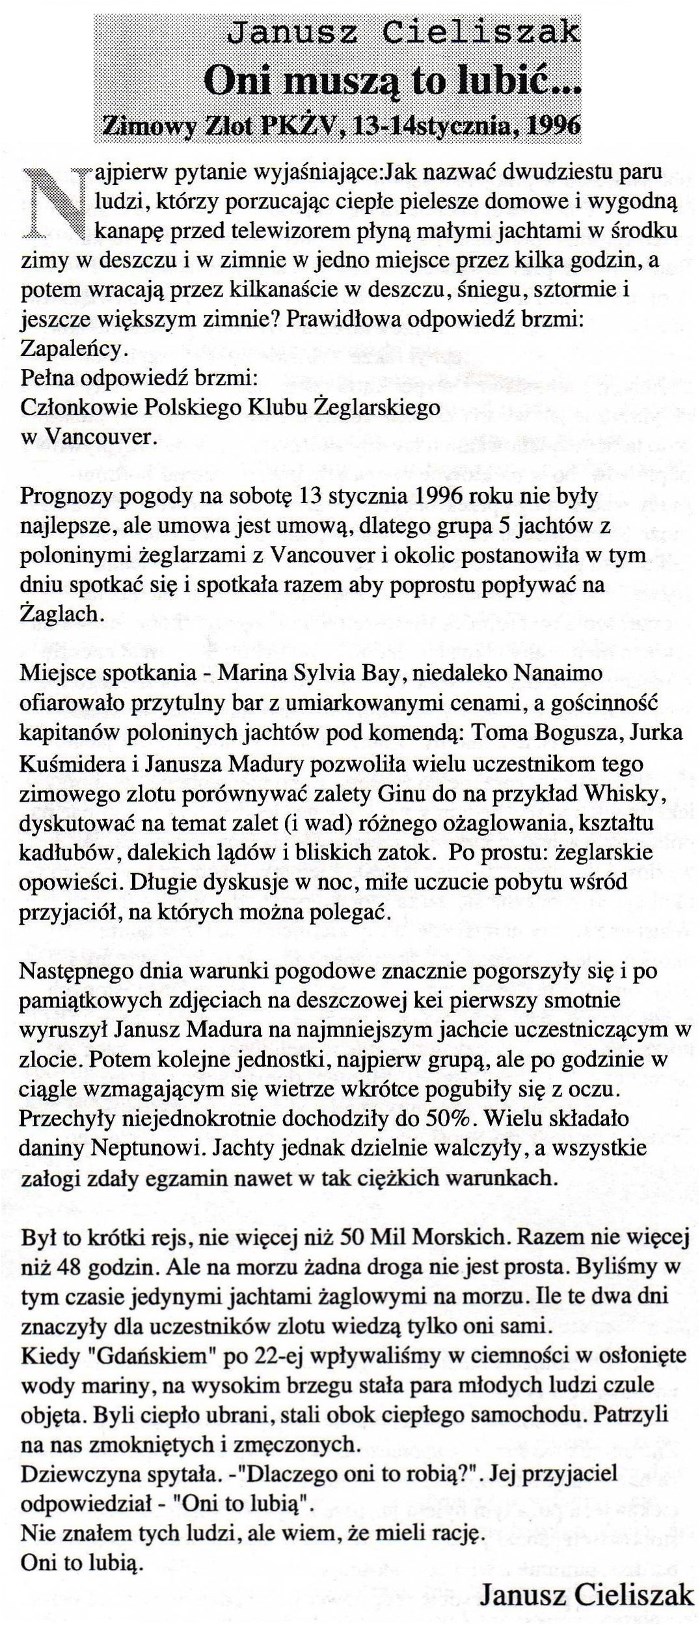 5 Zimowy Zlot PKZ 13-14.01.1996 (700)